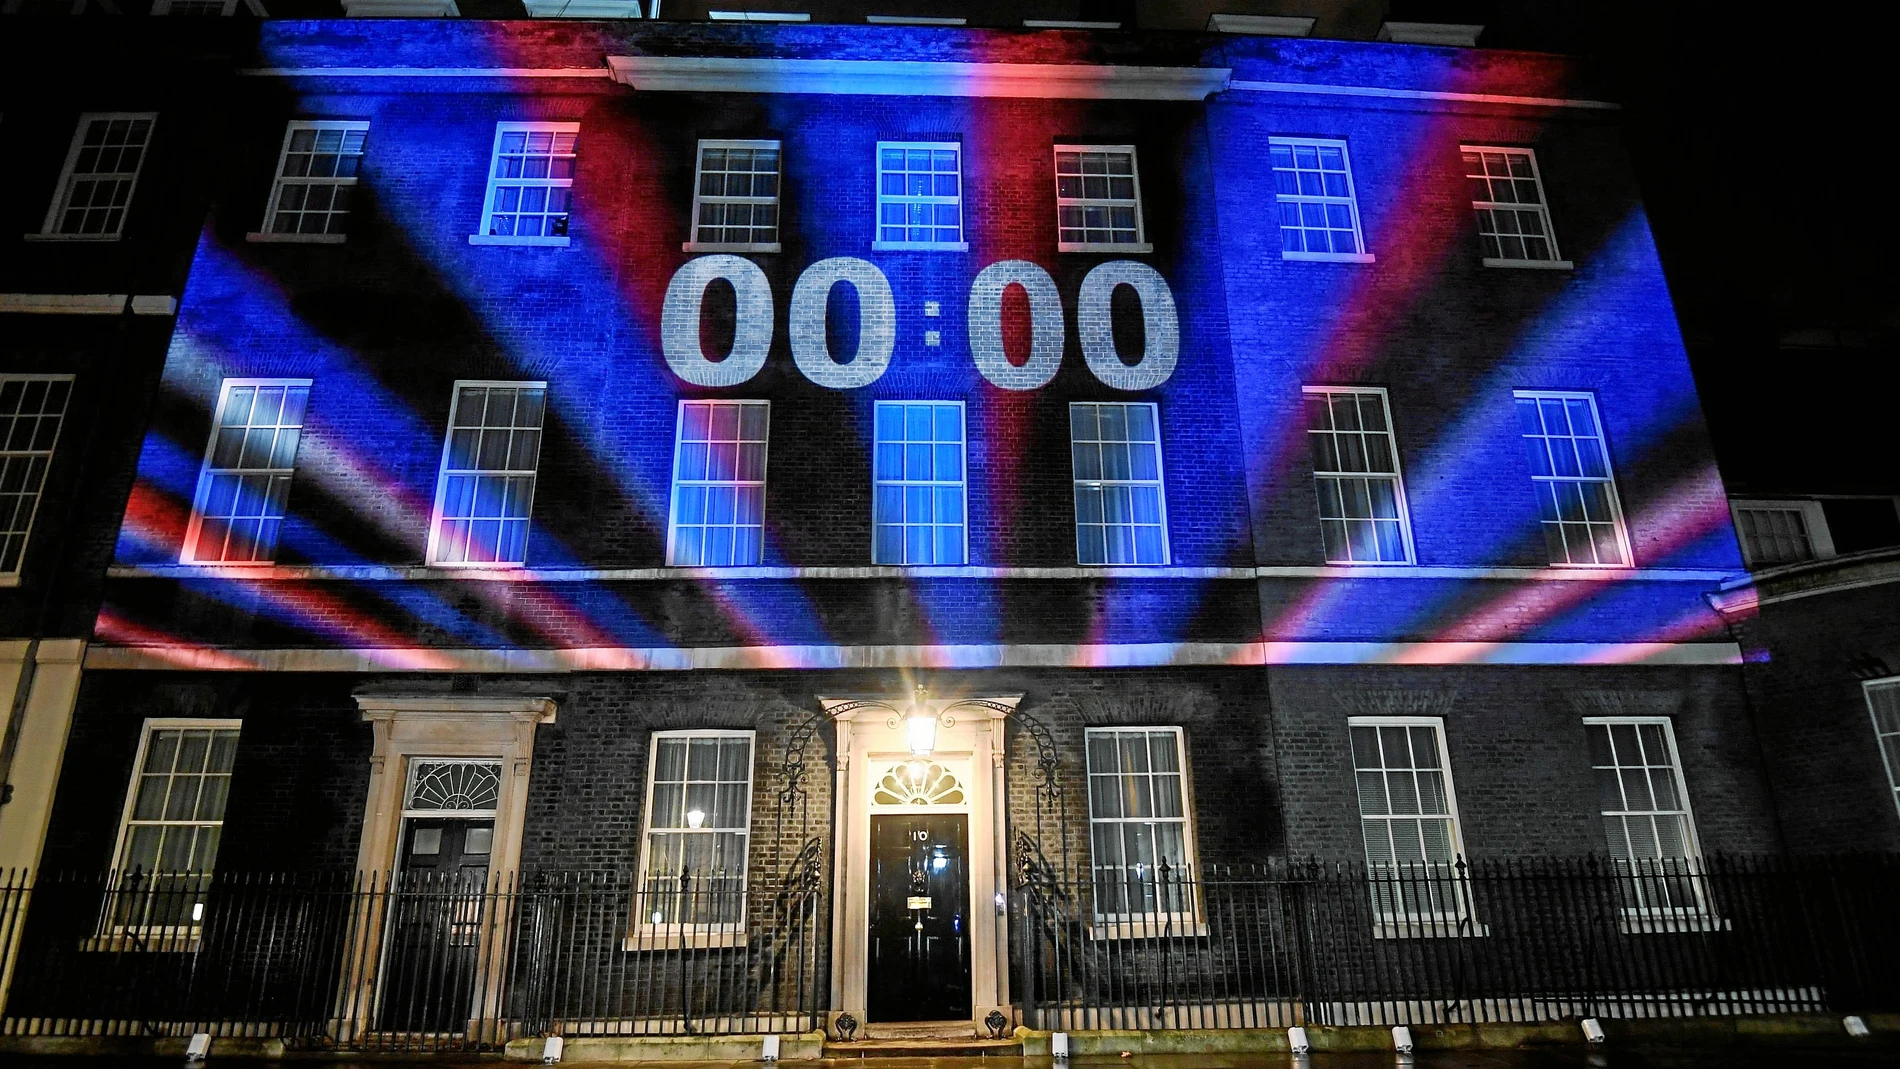 La fachada de Downing Street con un reloj marcando la cuenta atrás justo a las doce de la noche